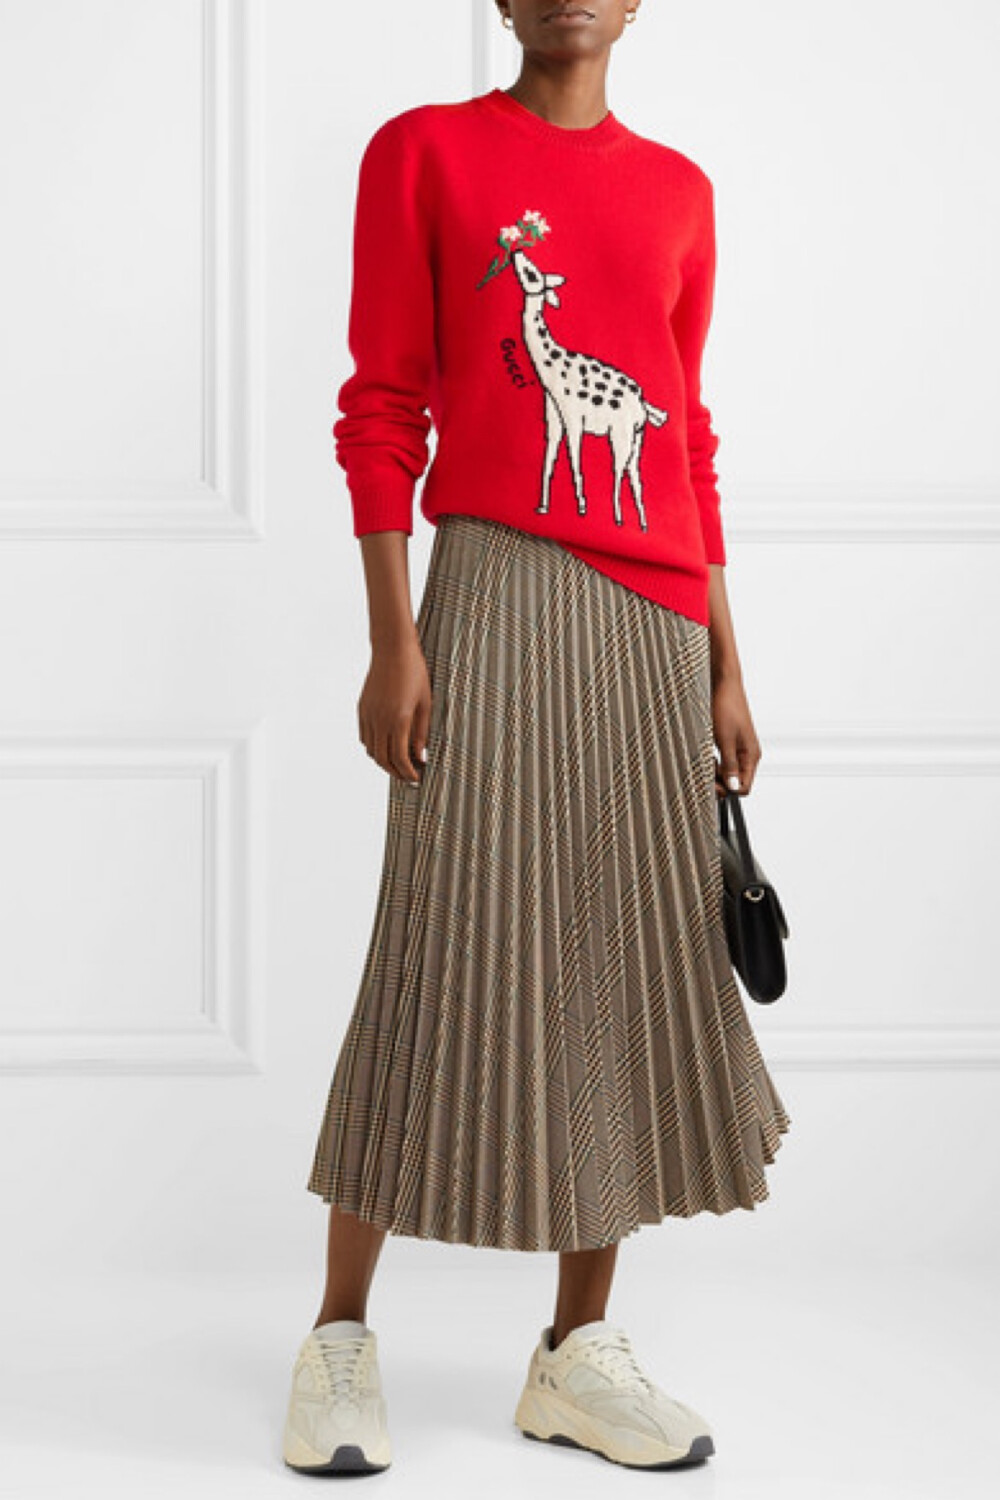 大自然是 Gucci 创意总监 Alessandro Michele 永不枯竭的灵感之源，比如这款毛衣，便呈现出小鹿啃食树叶的嵌花针织图案。单品采用柔软的羊毛在意大利制成，绣有黑色品牌 Logo。不妨搭配中长半身裙，再踏上一双运动鞋，演绎时髦的街头造型。